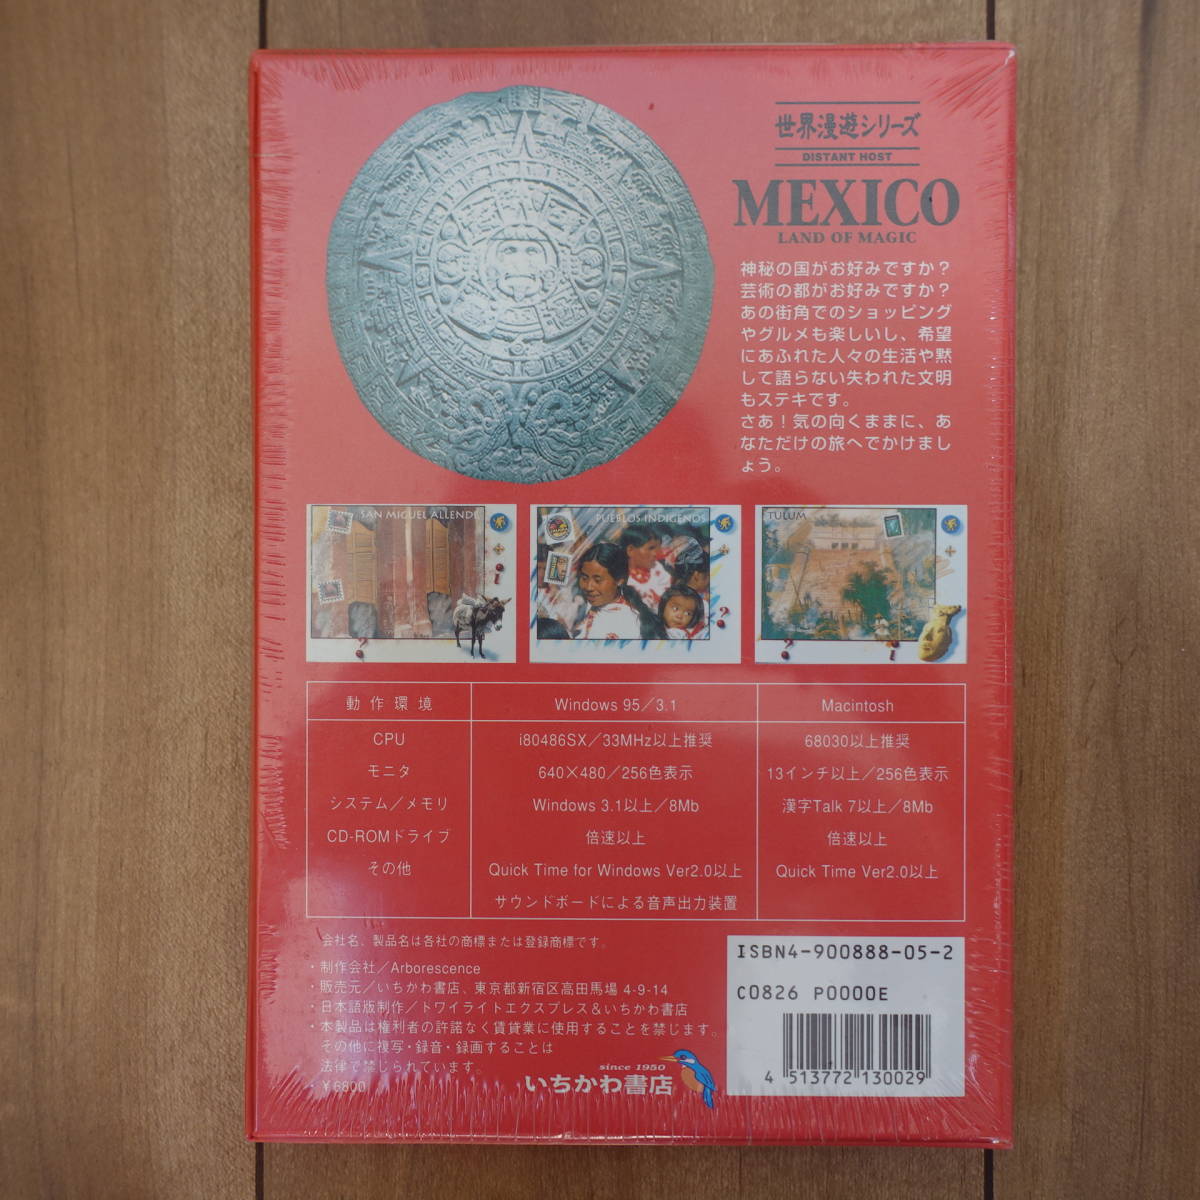  мир .. серии MEXICO Mexico день & Британия & запад Mac Windows нераспечатанный 